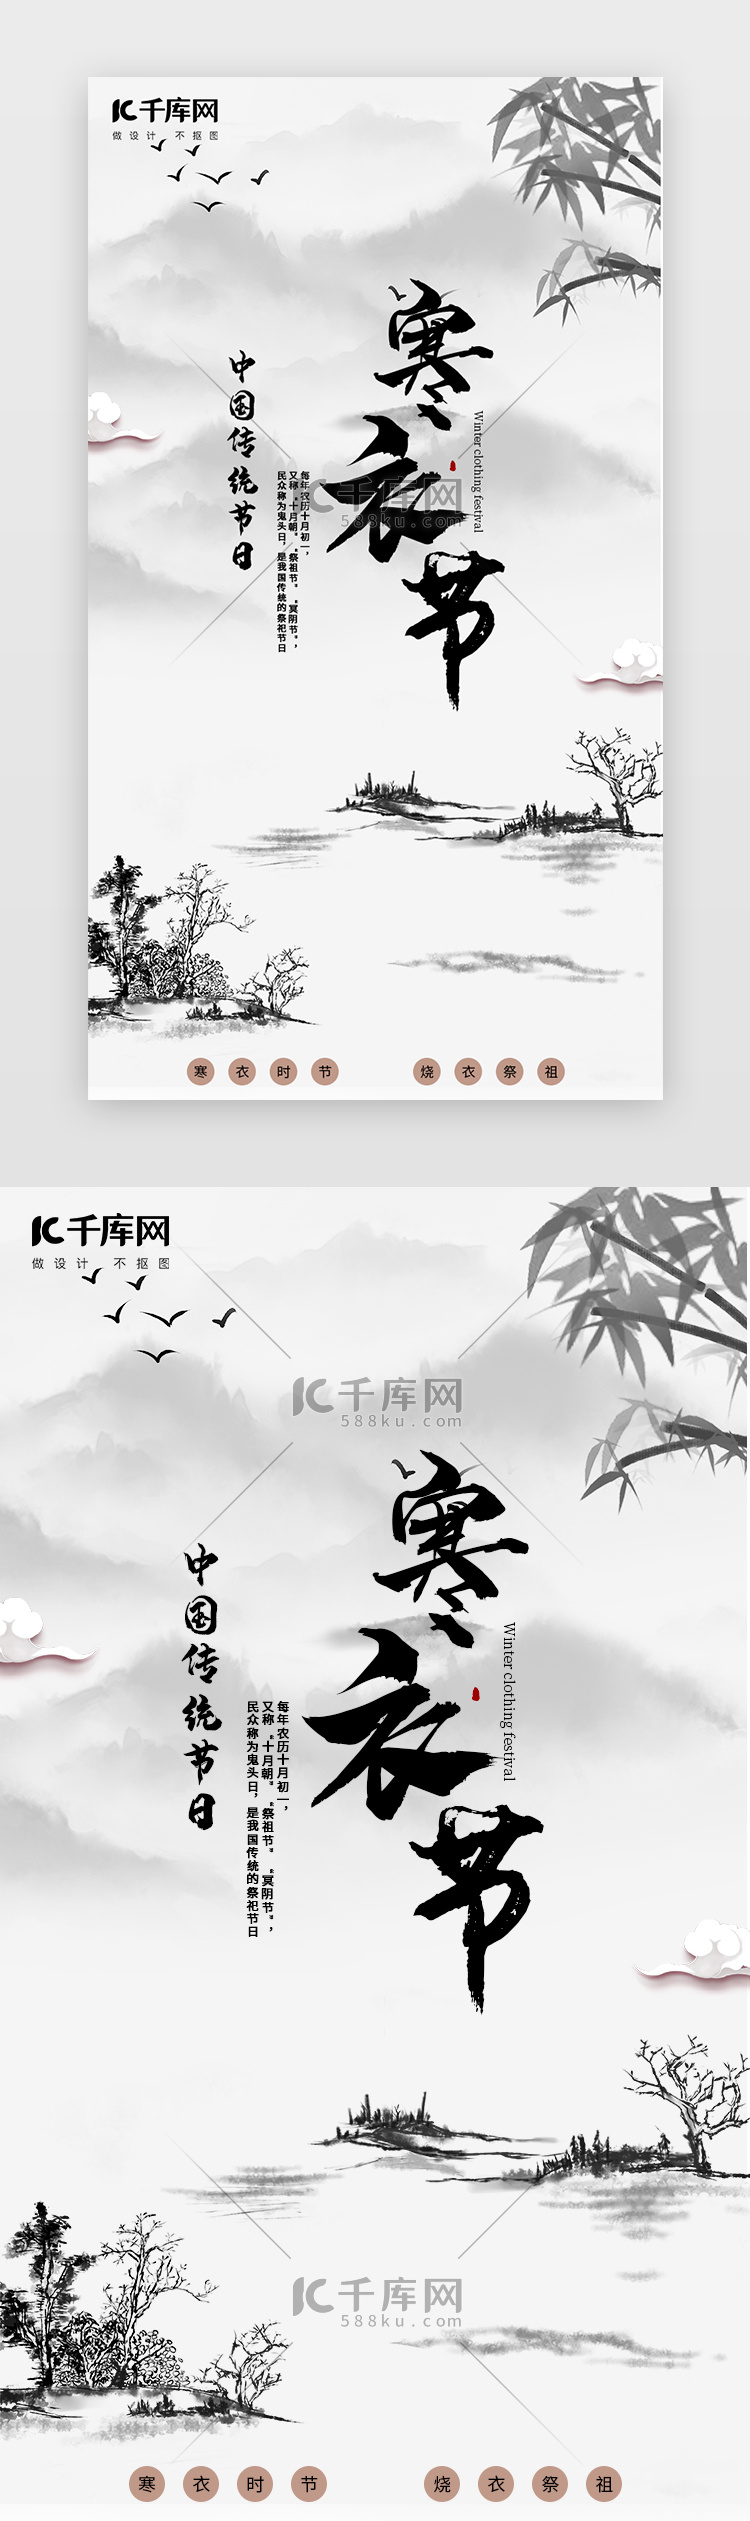 风景水墨画中国传统节日寒衣节闪屏海报